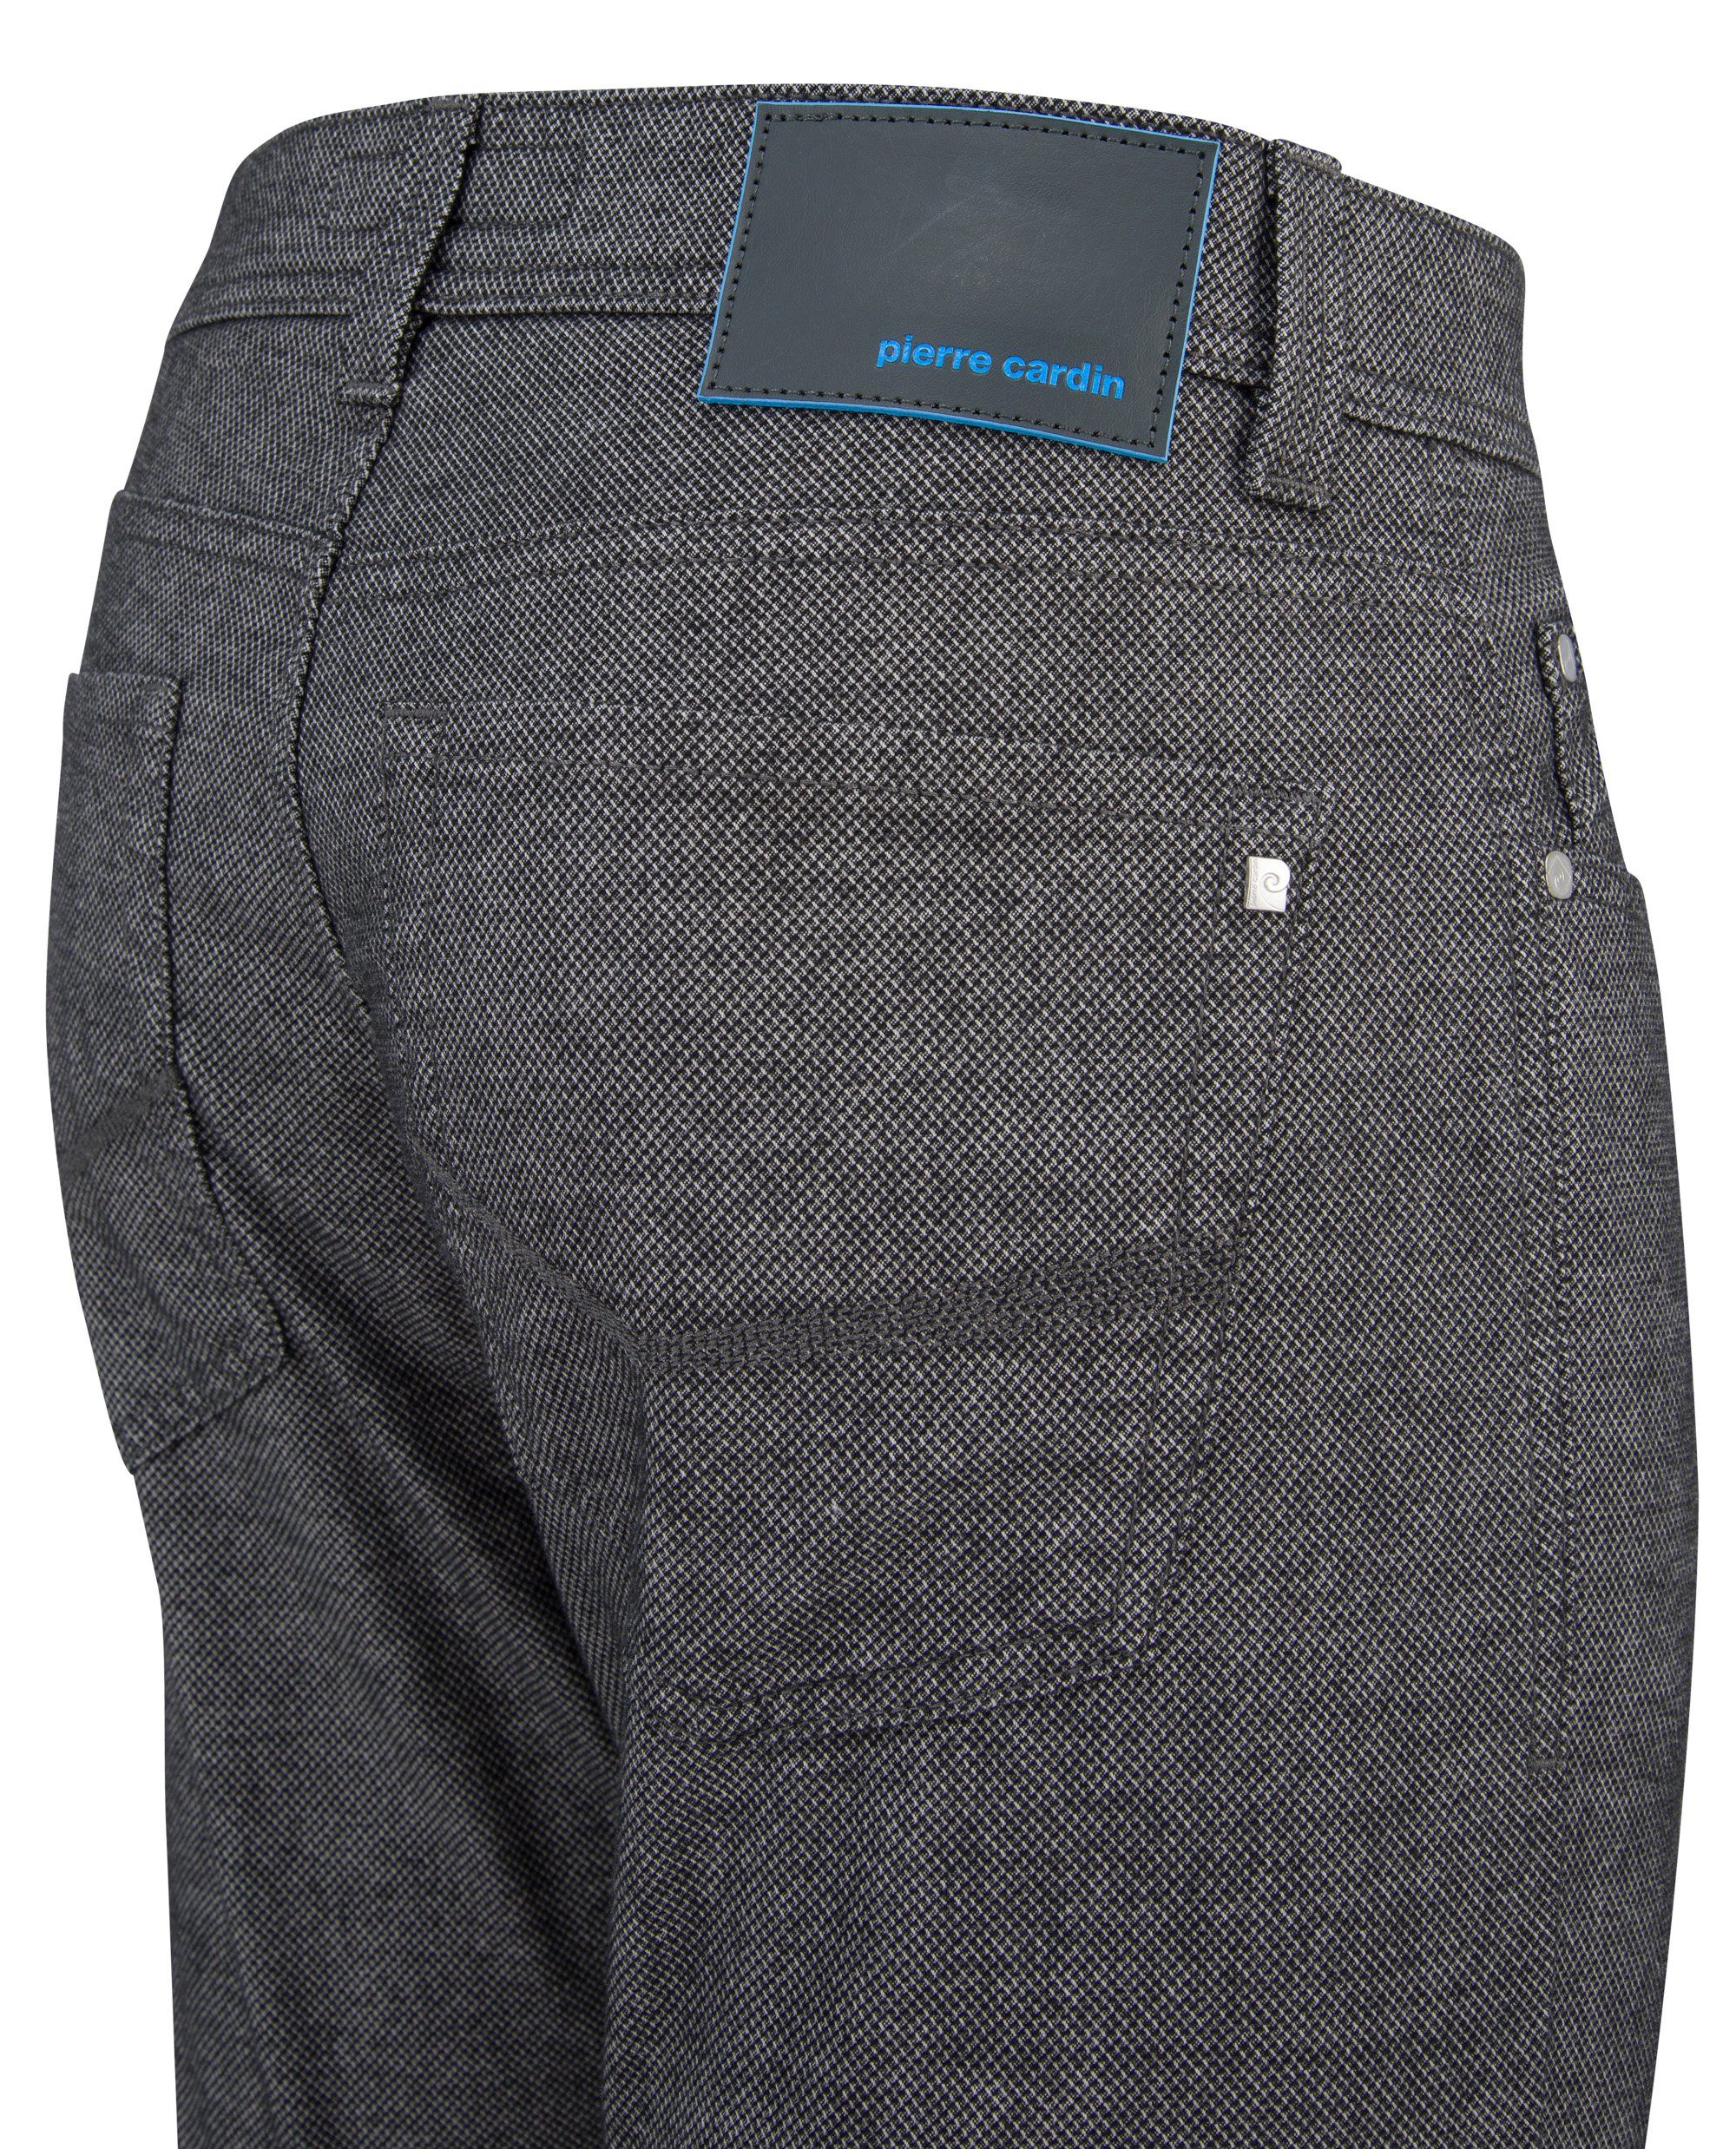 Pierre Cardin 5-Pocket-Jeans LYON grey 3451 FUTUREFLEX structured PIERRE CARDIN 4790.82